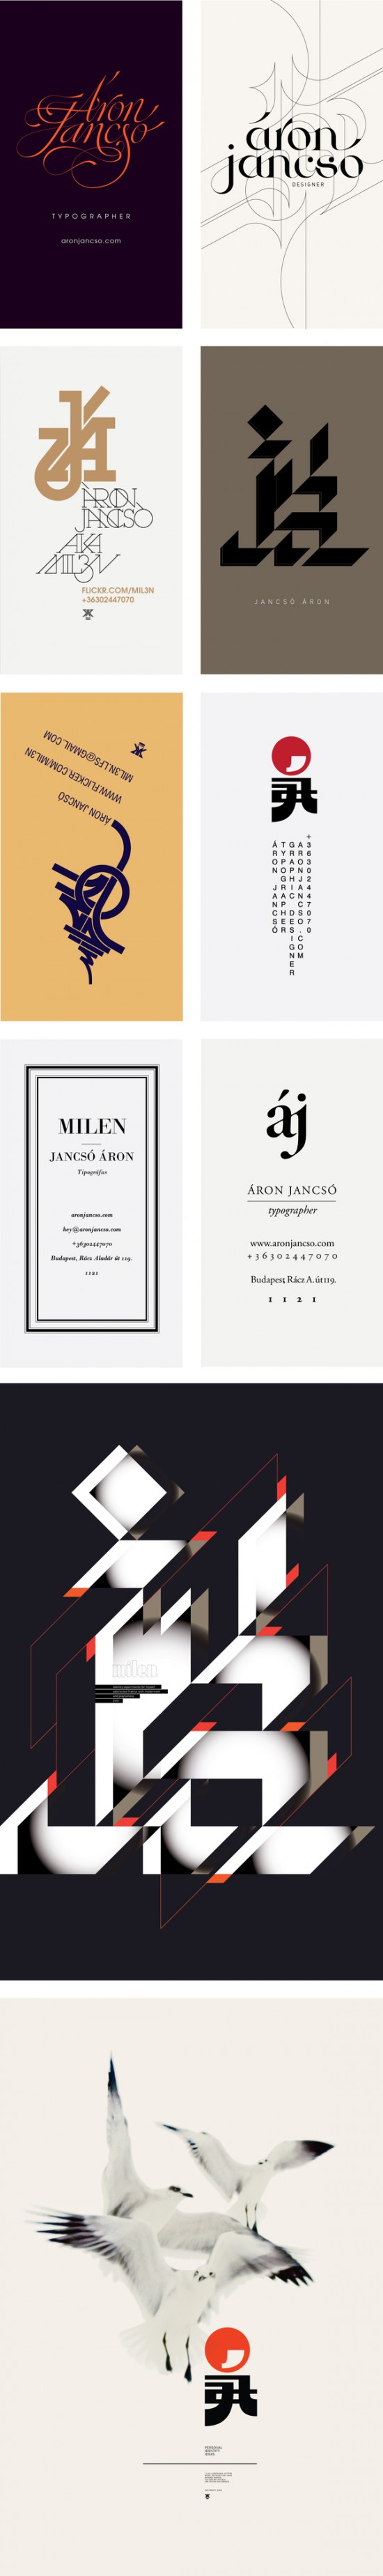 匈牙利平面设计师Aron Jancso字体设计作品欣赏(4)